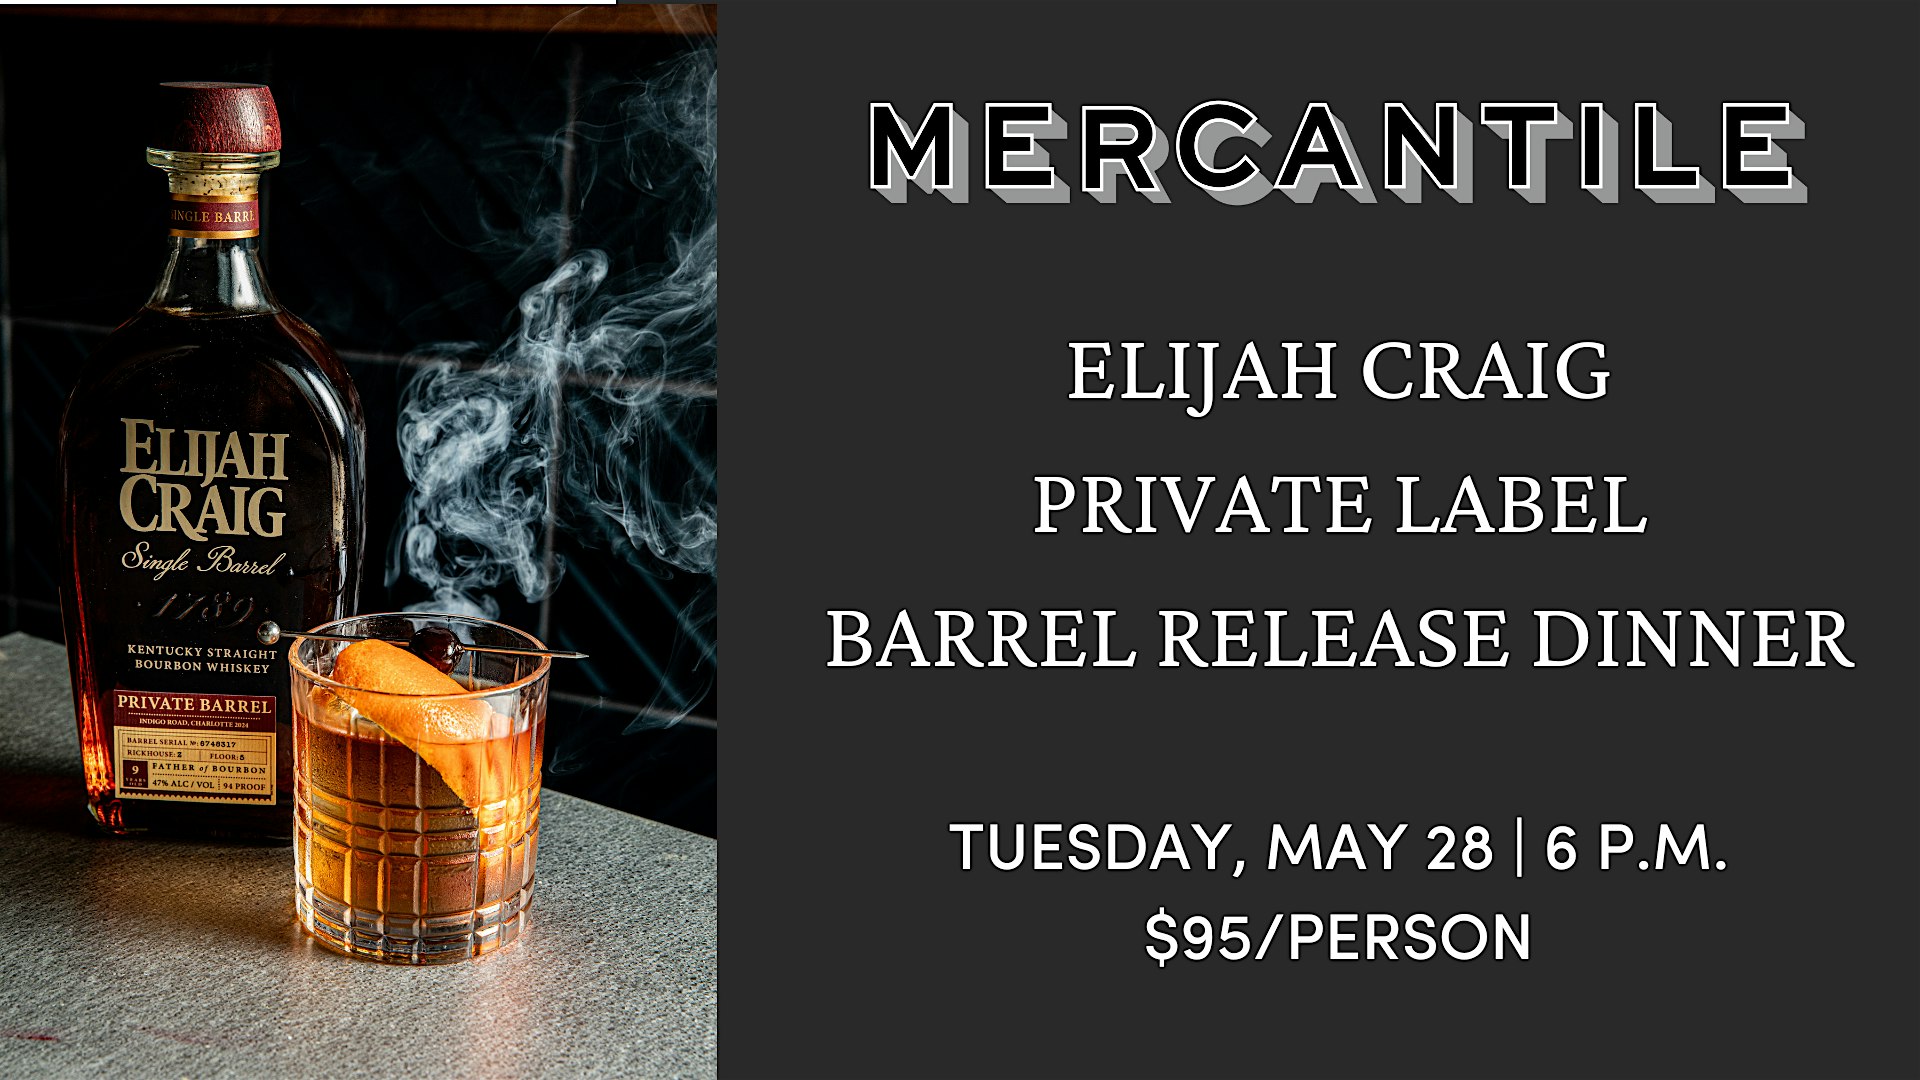 Elijah Craig Private Label Barrel Release Dinner